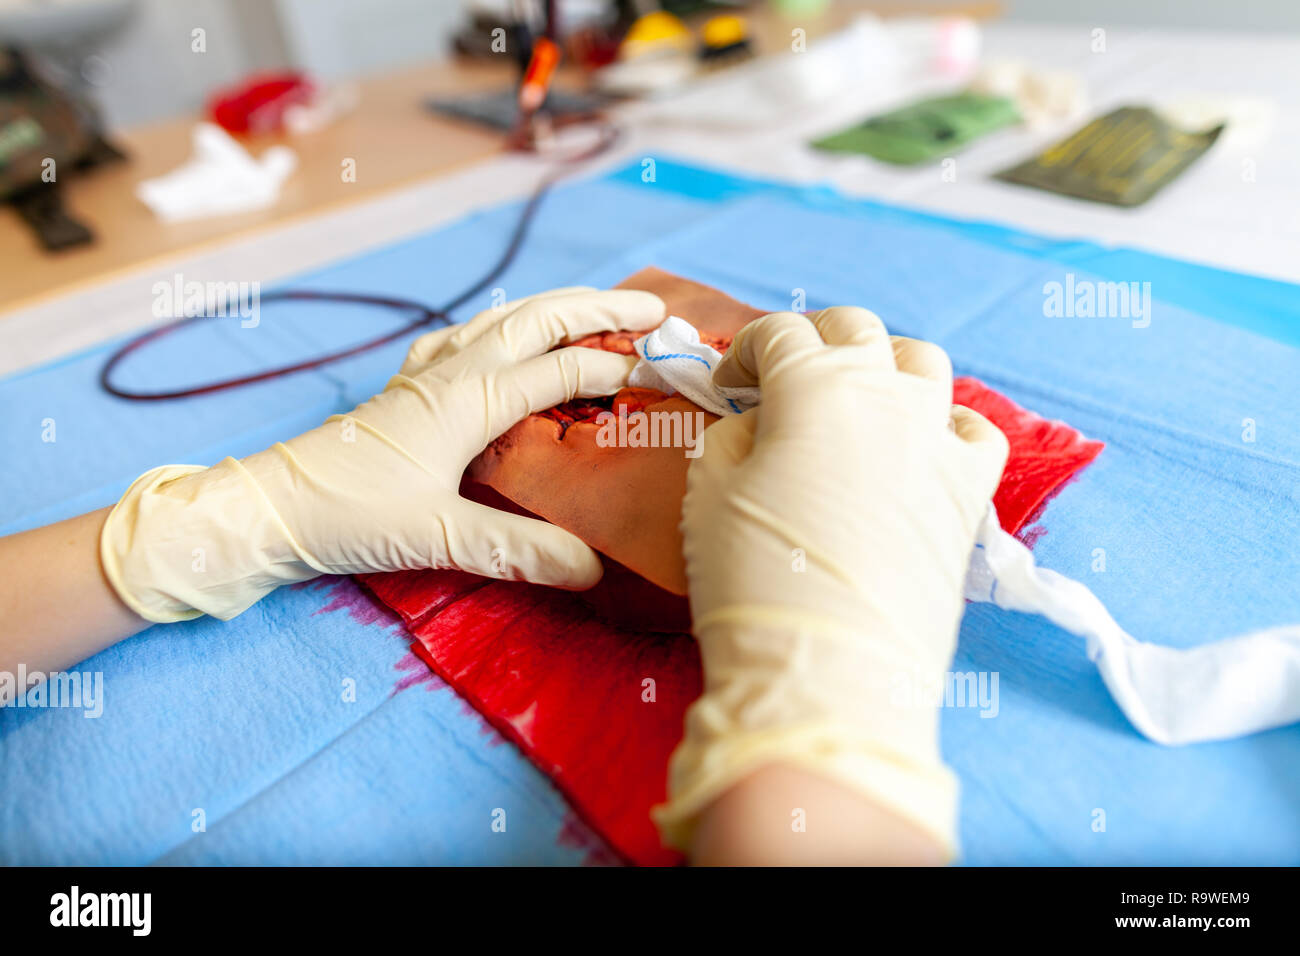 Infirmier militaire allemand de contrôle des saignements pratique sur une blessure dummy Banque D'Images